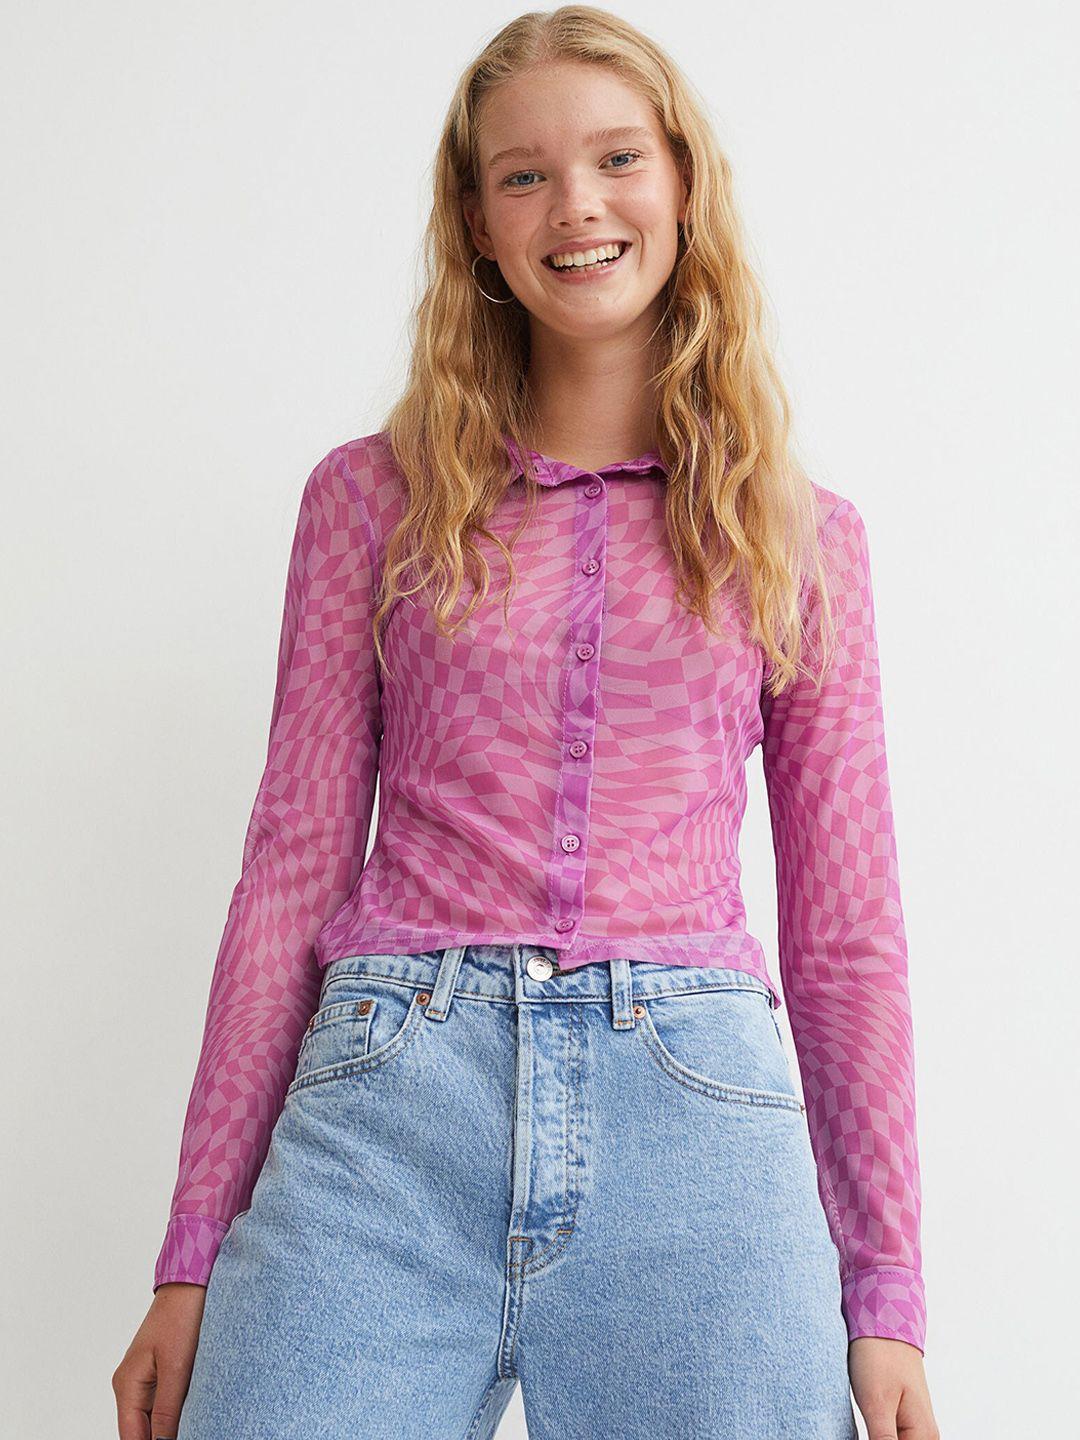 h&m women pink printed mesh shirt